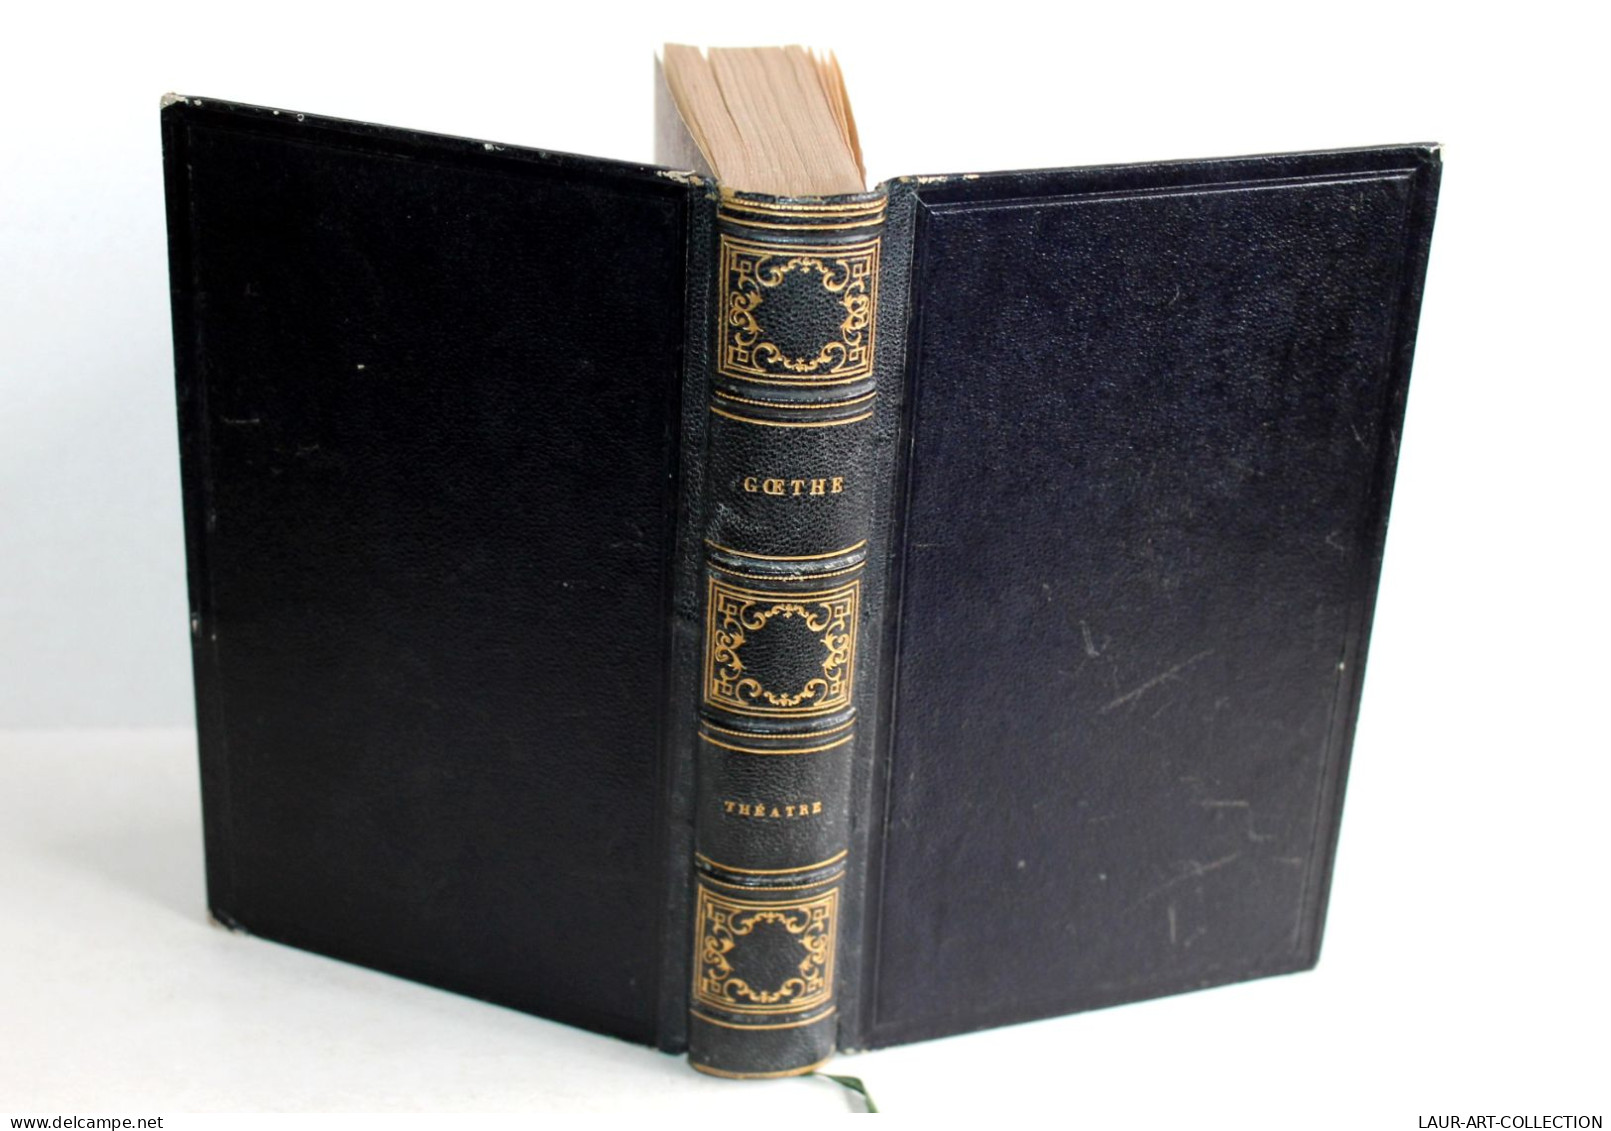 THEATRE DE GOETHE, TRADUCTION NOUVELLE Par M.X. MARMIER 1853 CHARPENTIER EDITEUR / ANCIEN LIVRE XIXe SIECLE (2603.9) - Autores Franceses